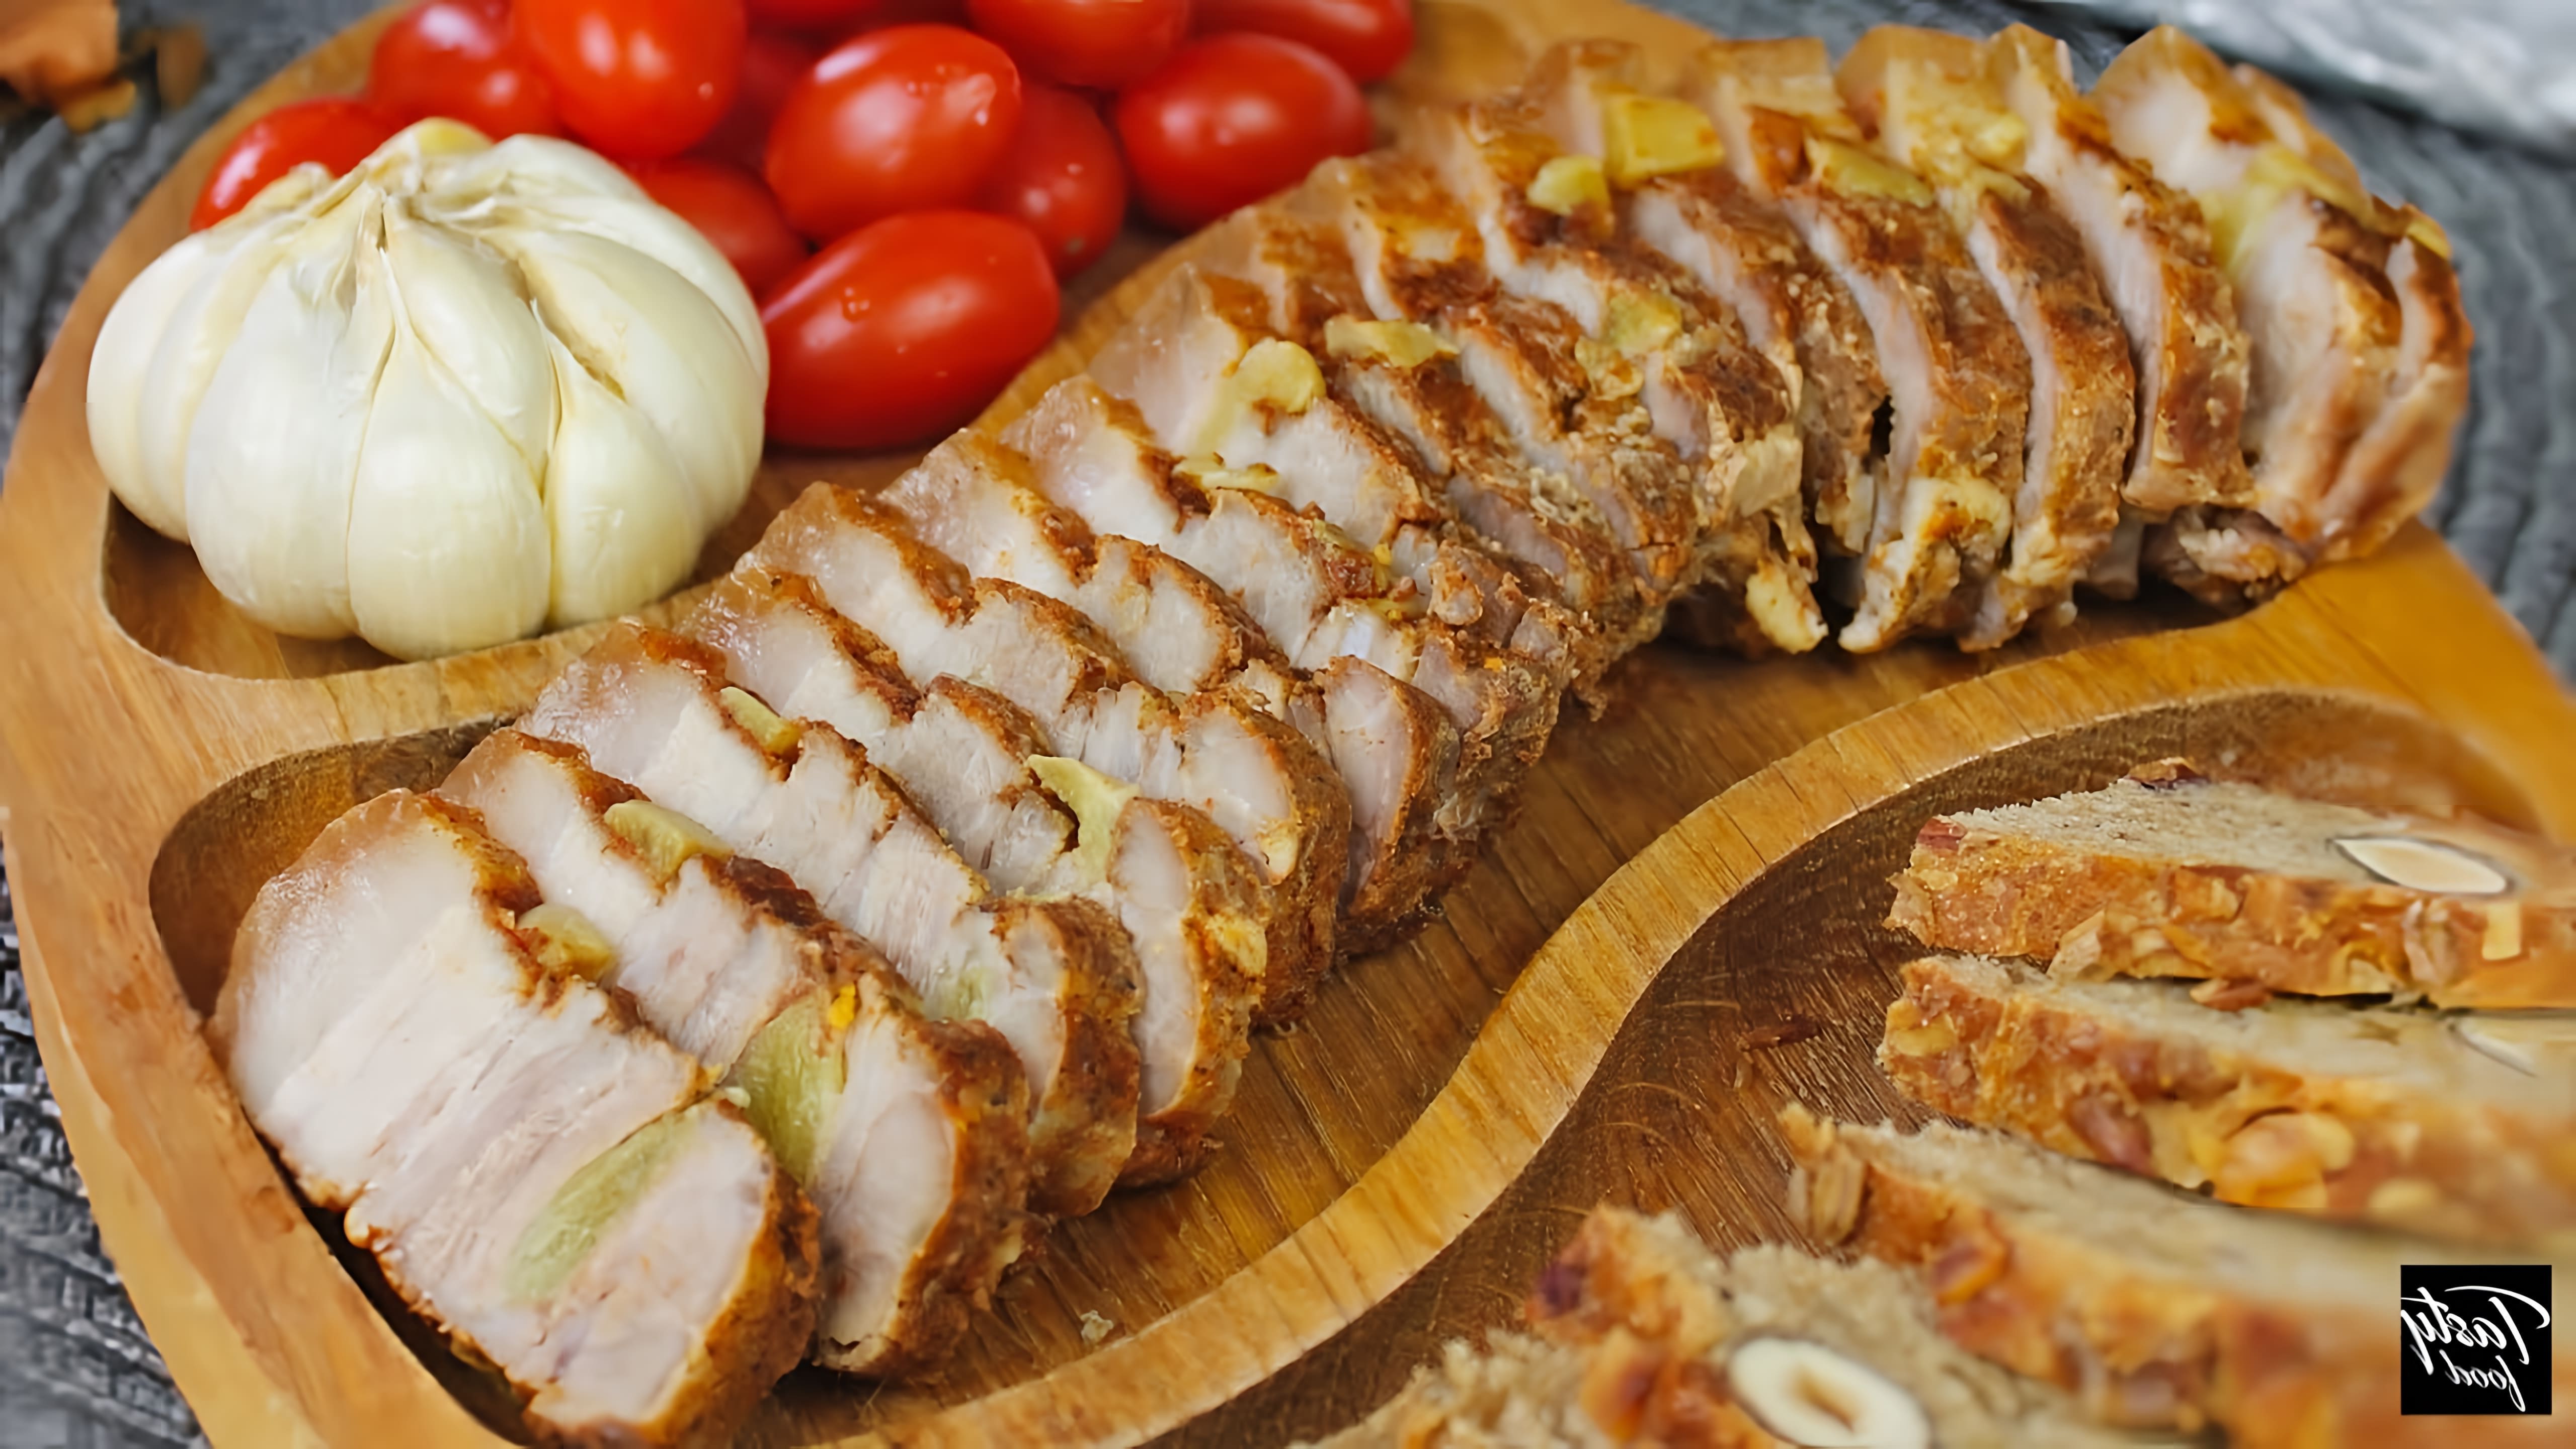 В этом видео демонстрируется простой рецепт приготовления свиного подчеревка, который можно использовать как на праздничном столе, так и в качестве первого блюда